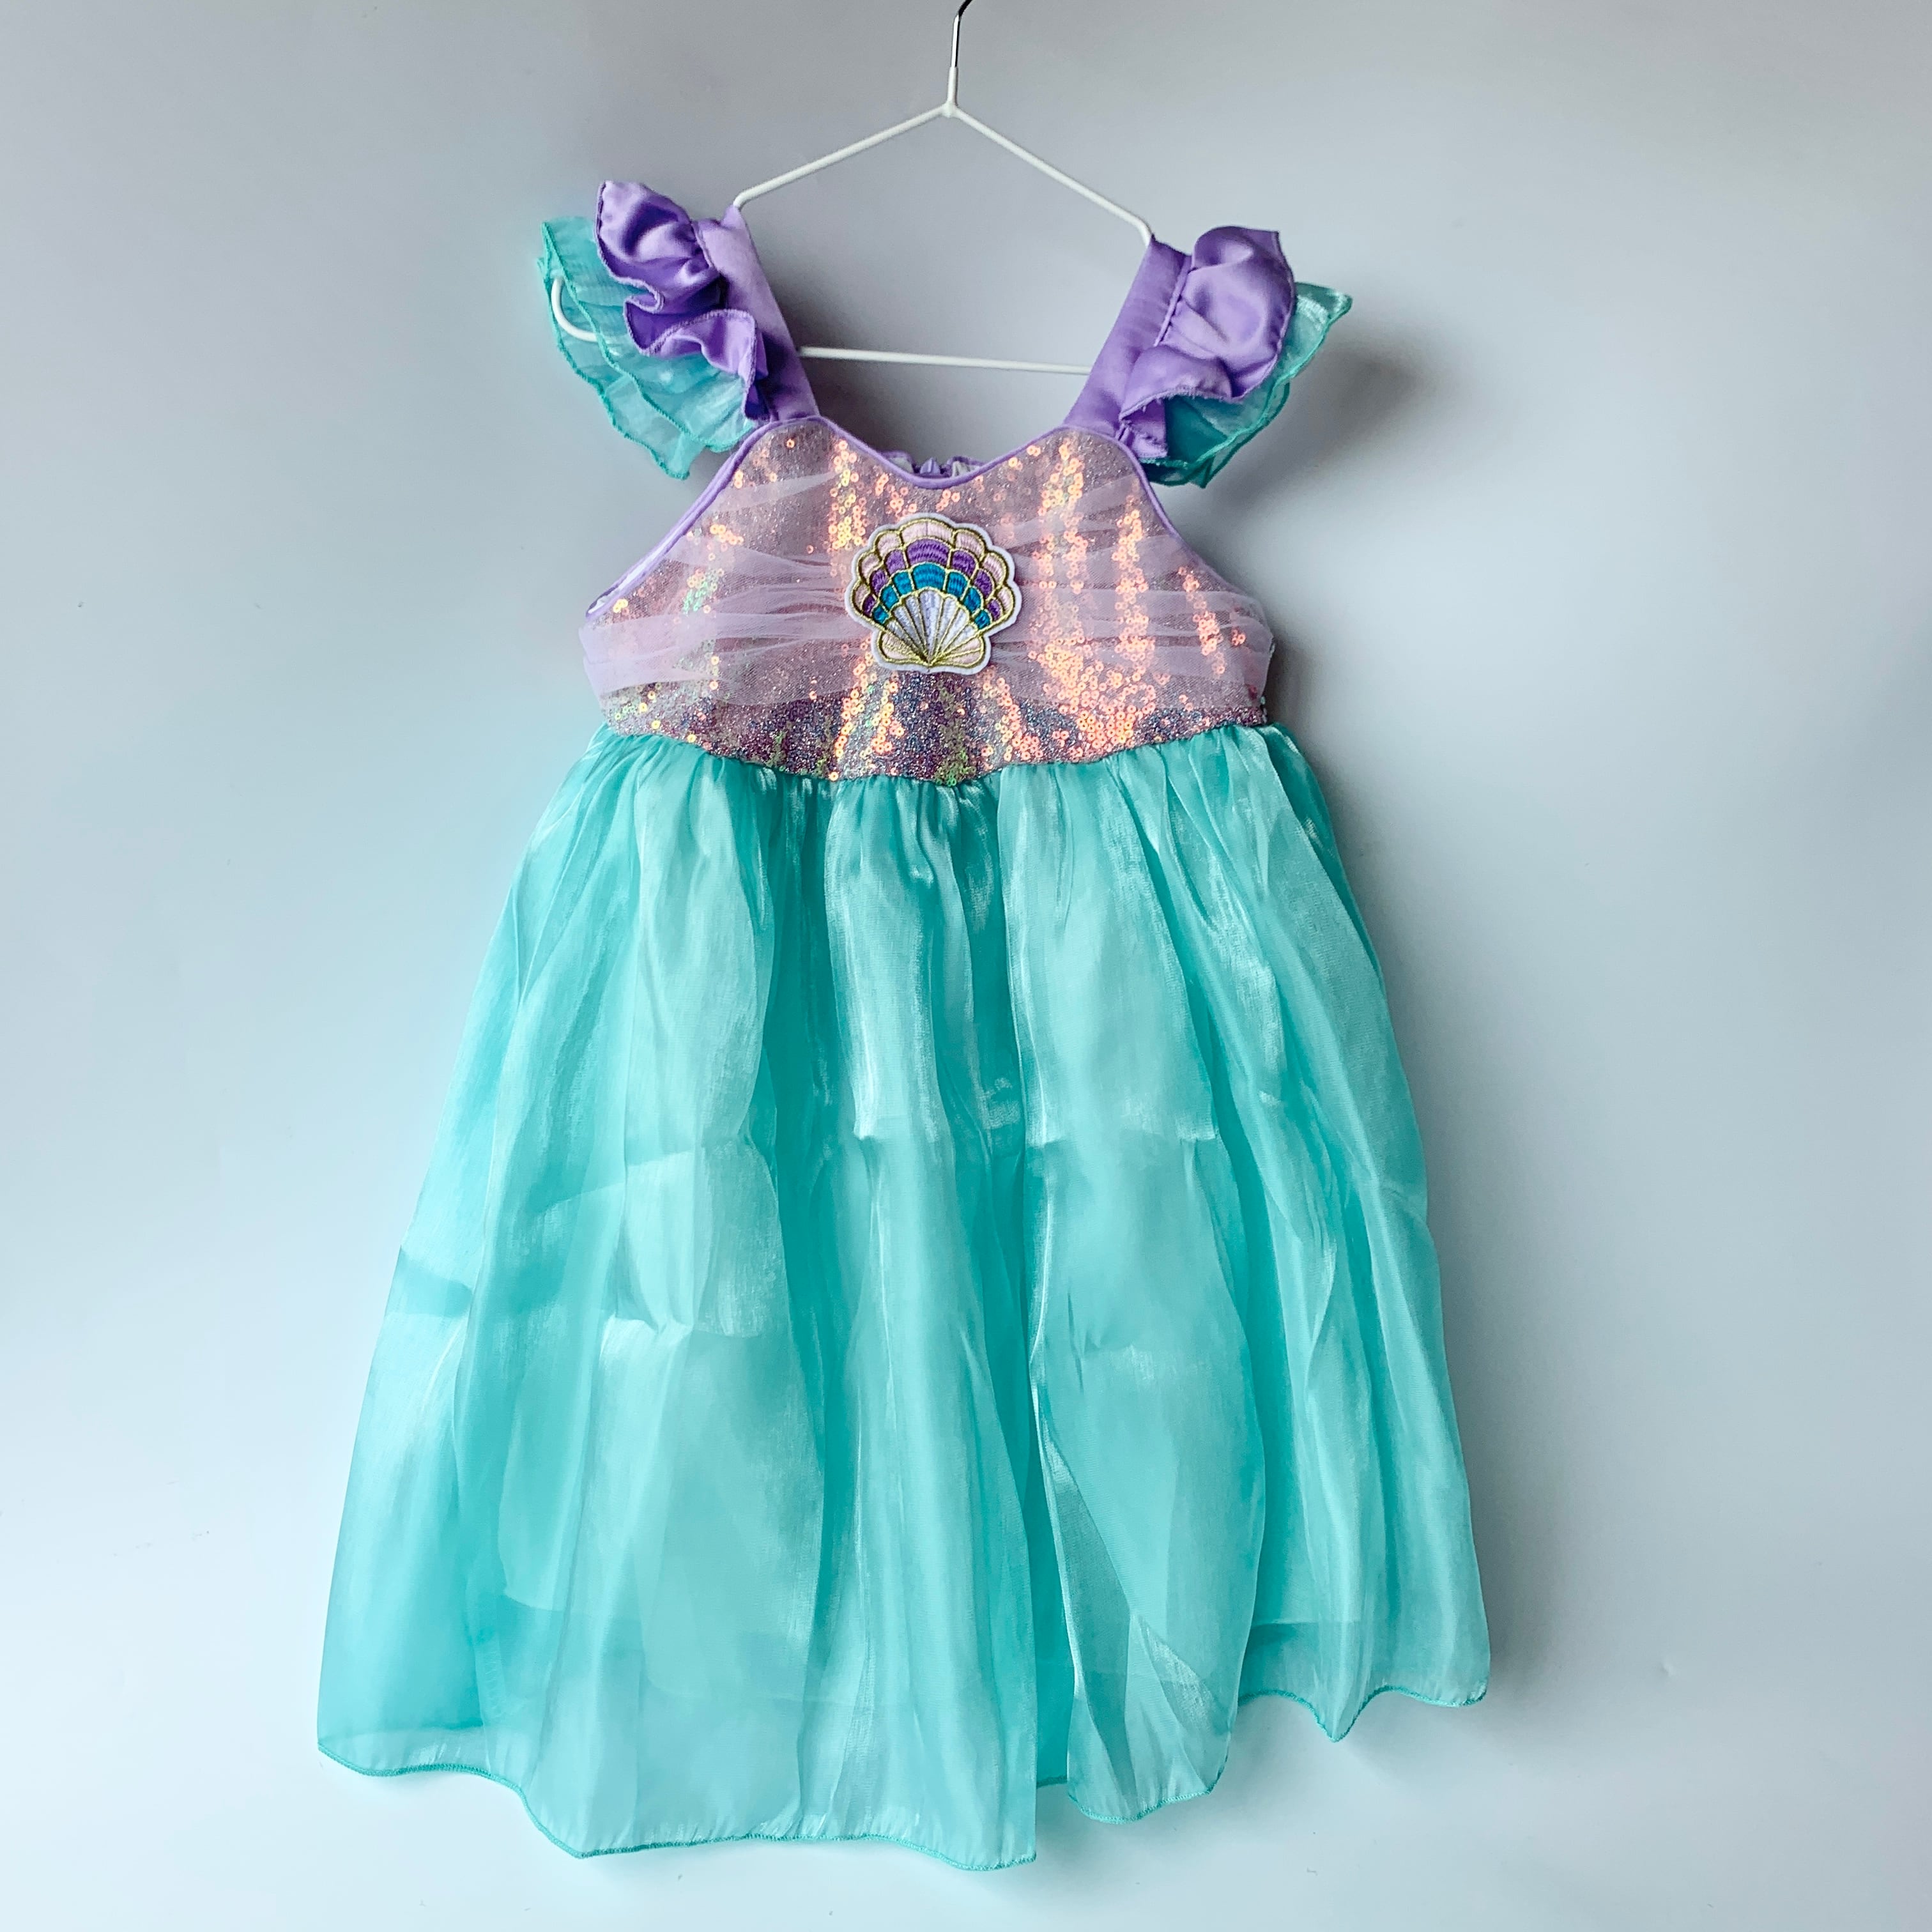 ハロウィン コスプレ 女の子 110 人魚姫 ドレス 衣装 キラキラ マーメイド